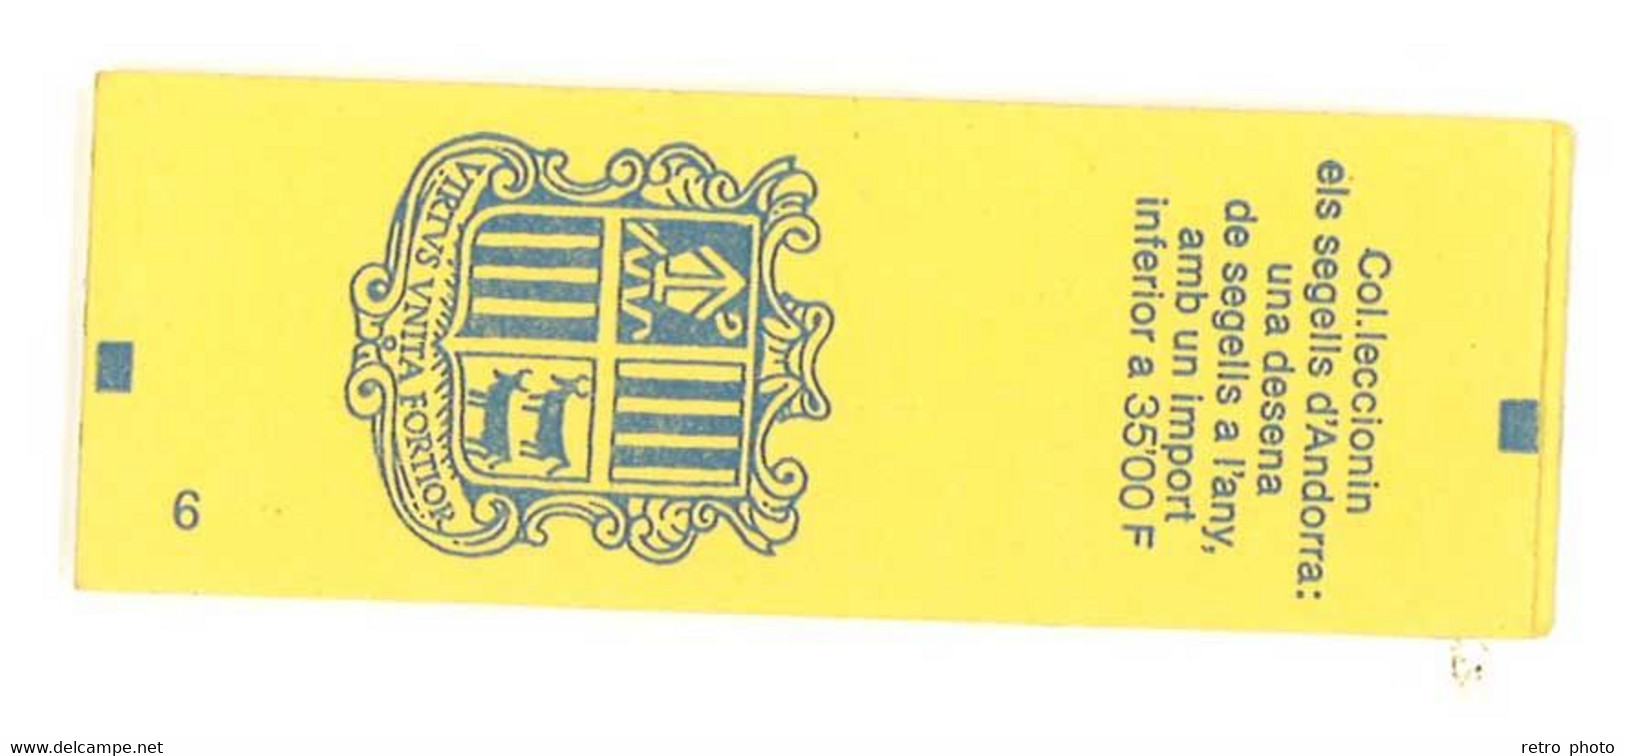 Carnet Andorre / Principat D'Andorra, 10 Timbres à 2,50 Francs N° 409 YT - Booklets